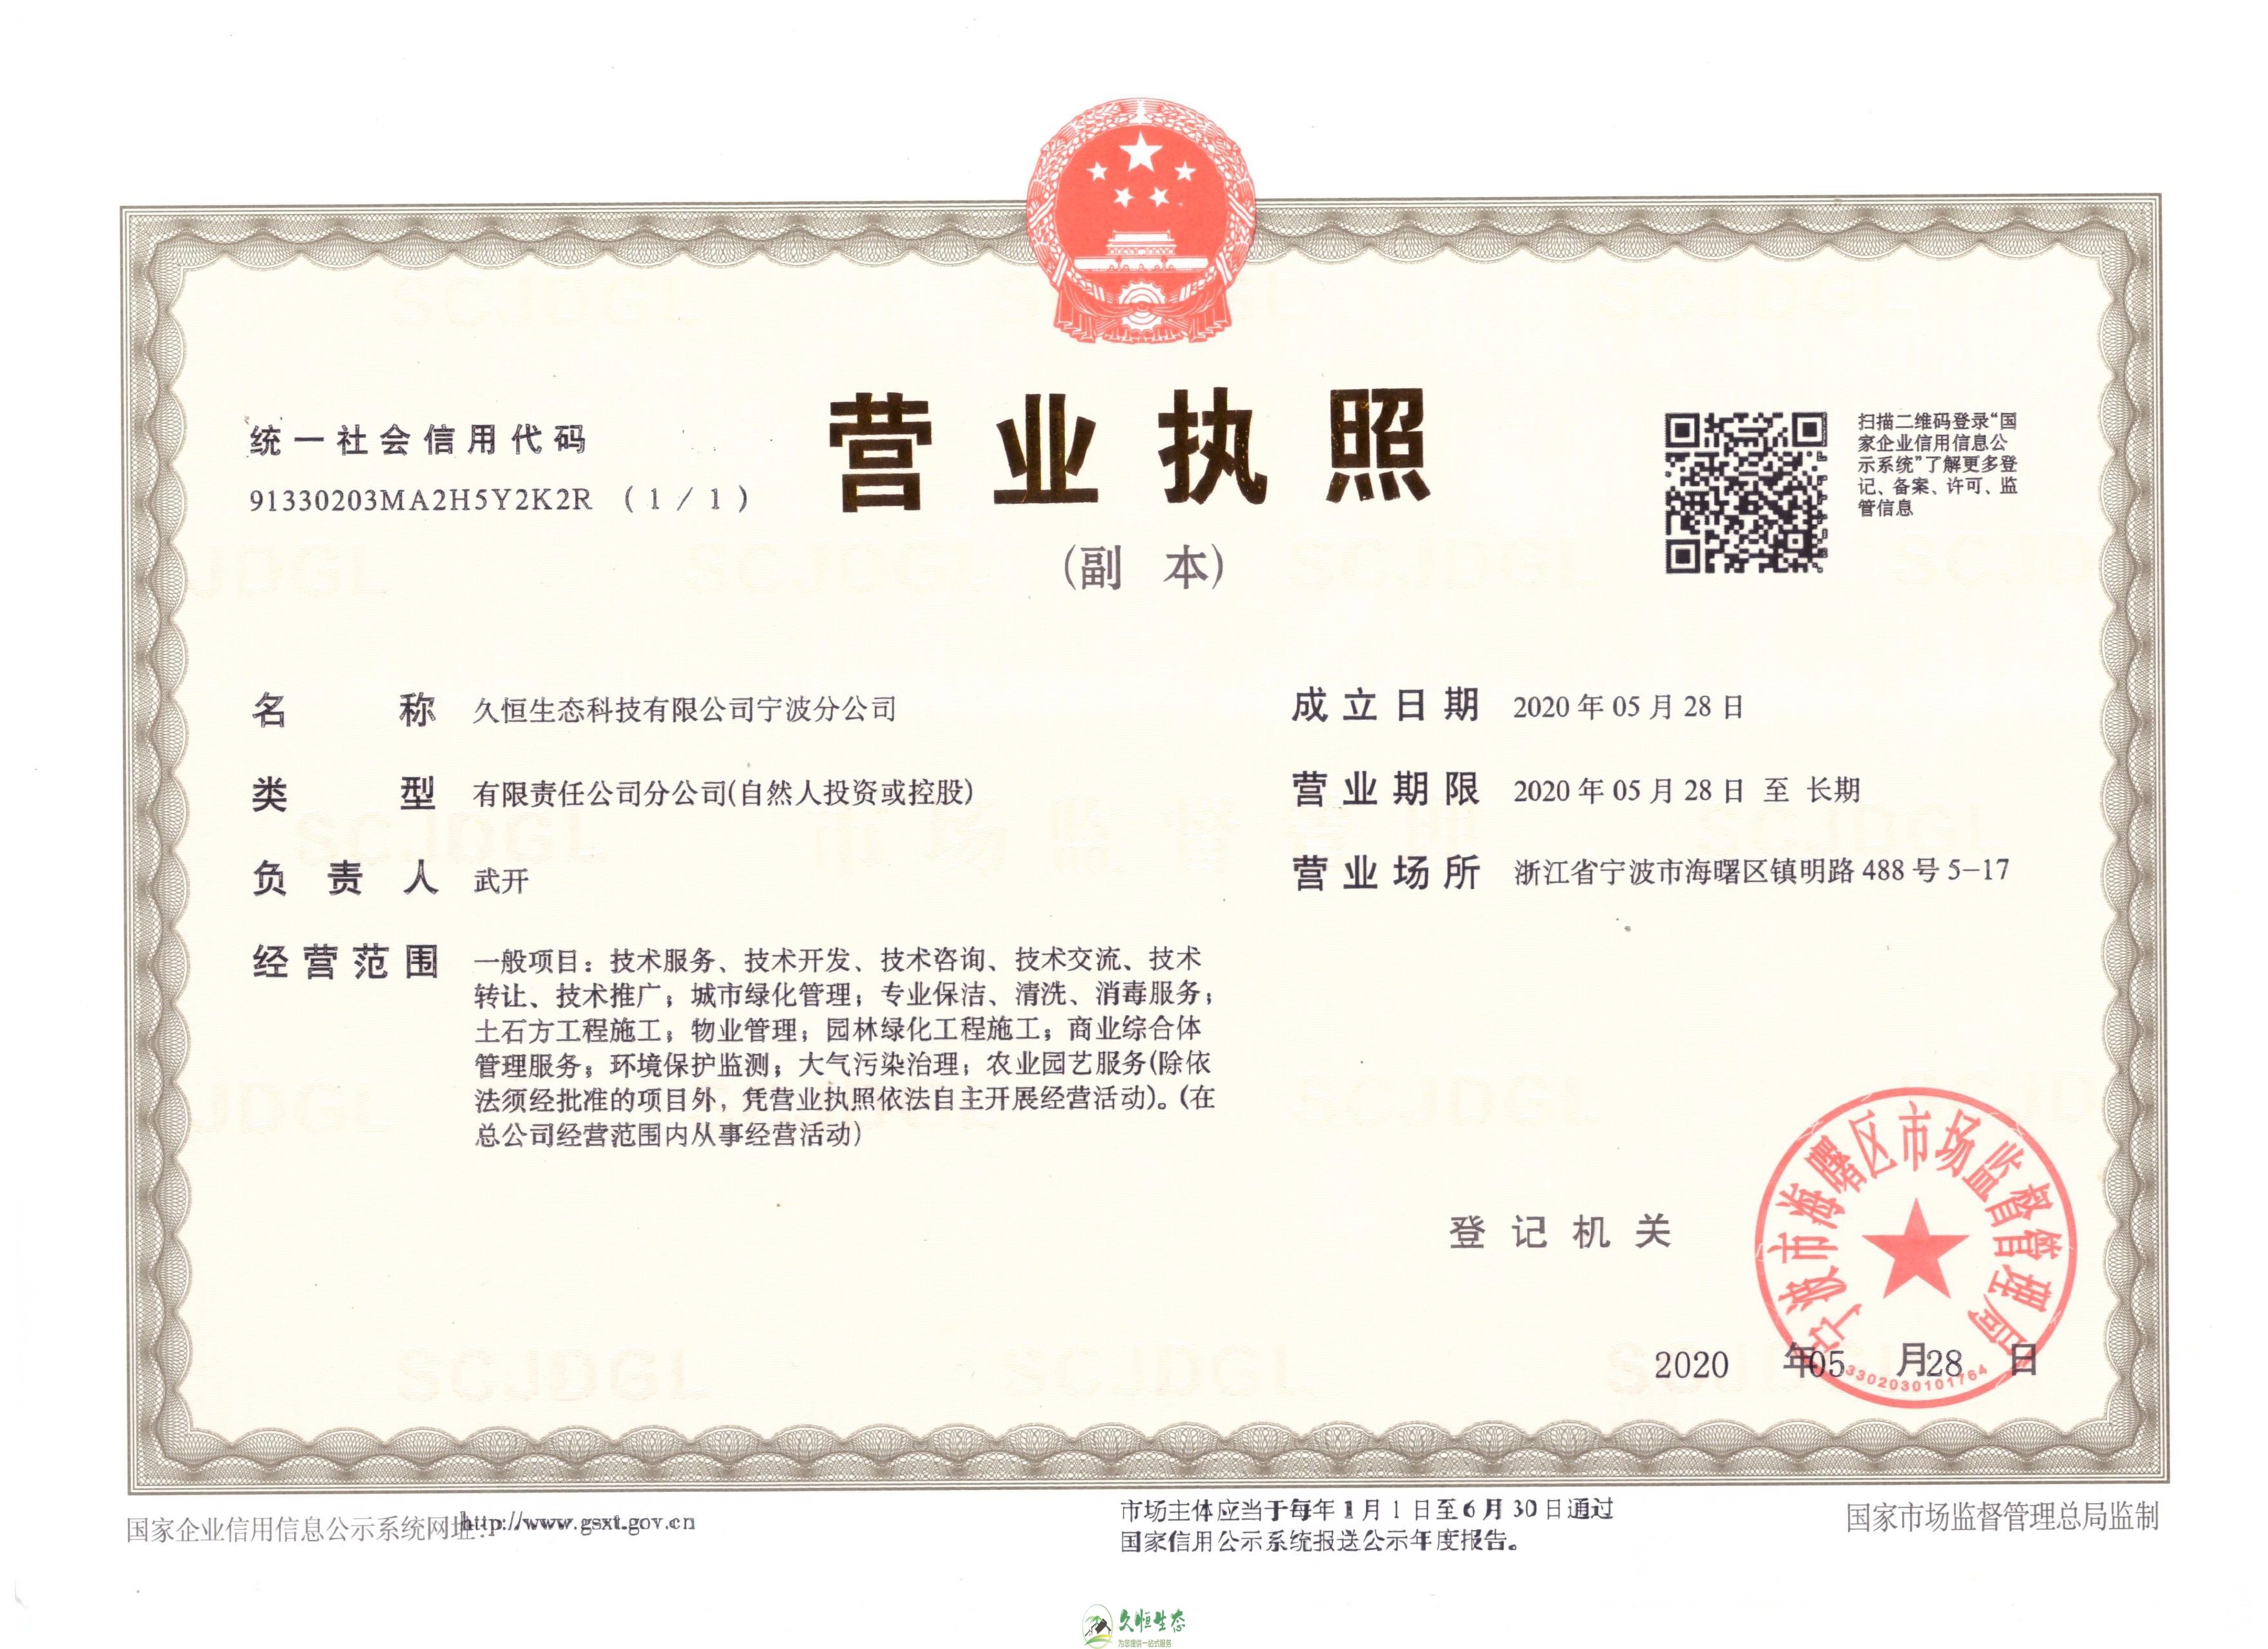 杭州建德久恒生态宁波分公司2020年5月28日成立